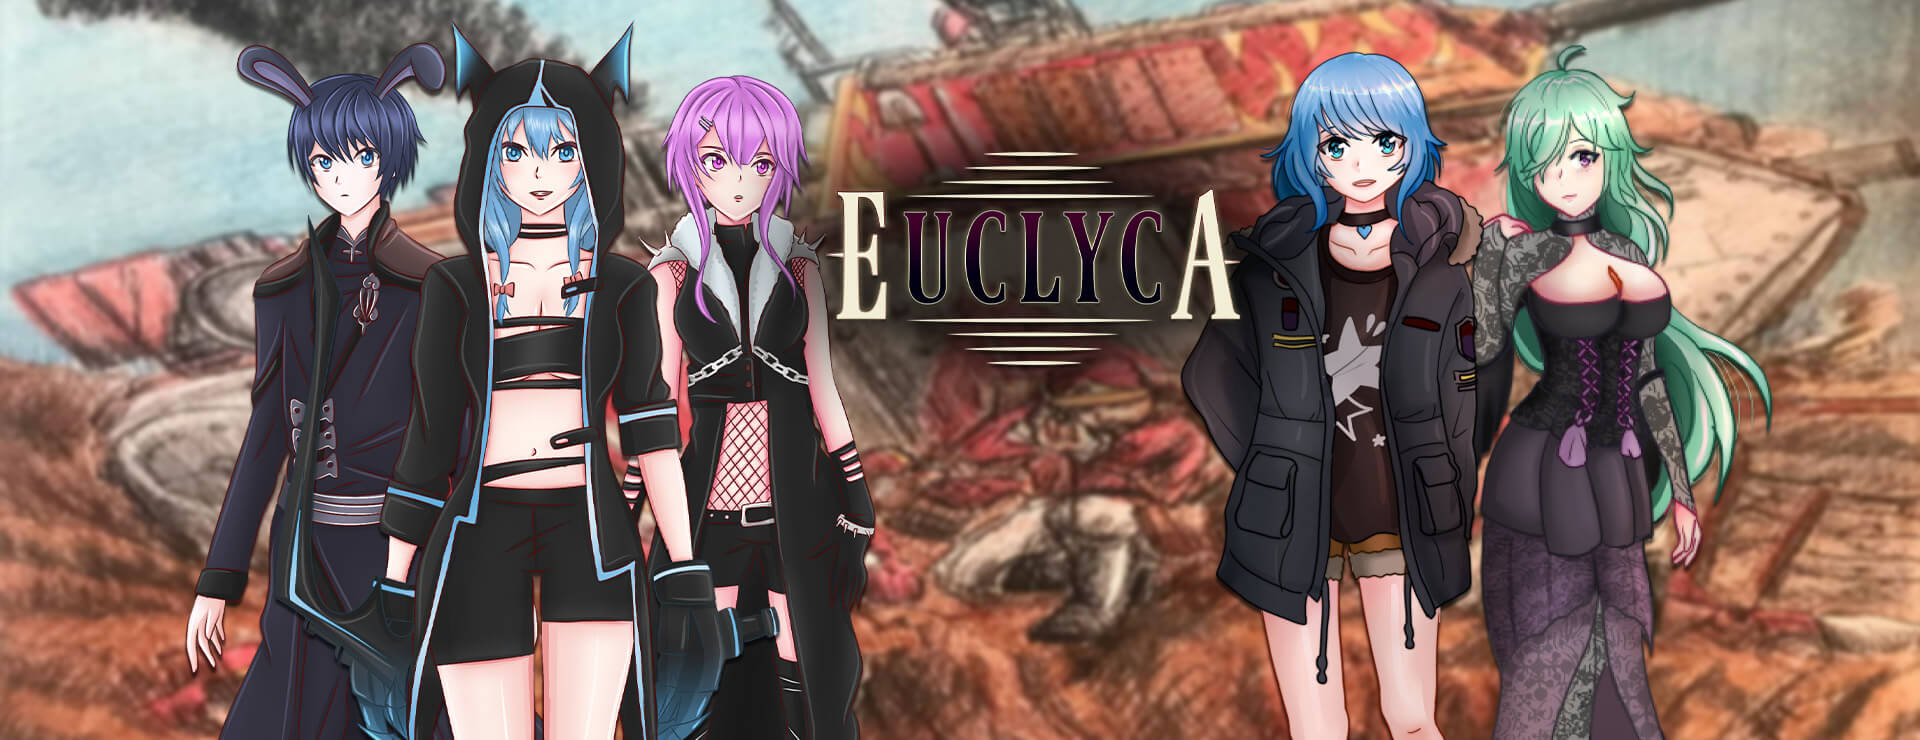 Euclyca - RPG Gra